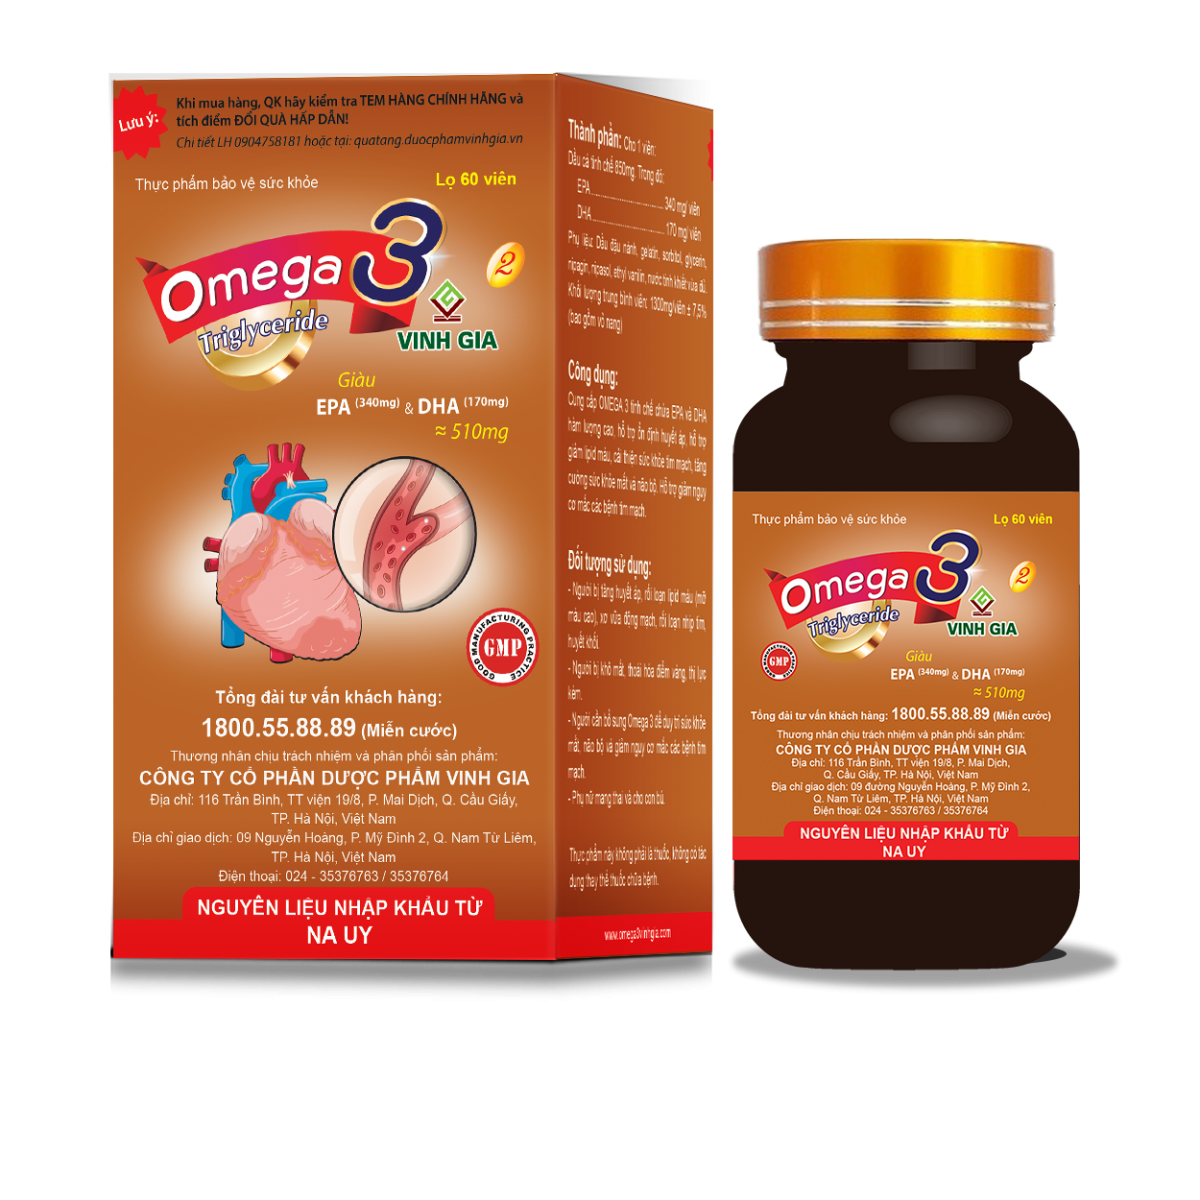 Omega 3 Vinh Gia 2 – Bổ sung Omega-3 dạng Triglyceride với EPA và DHA hàm lượng cao